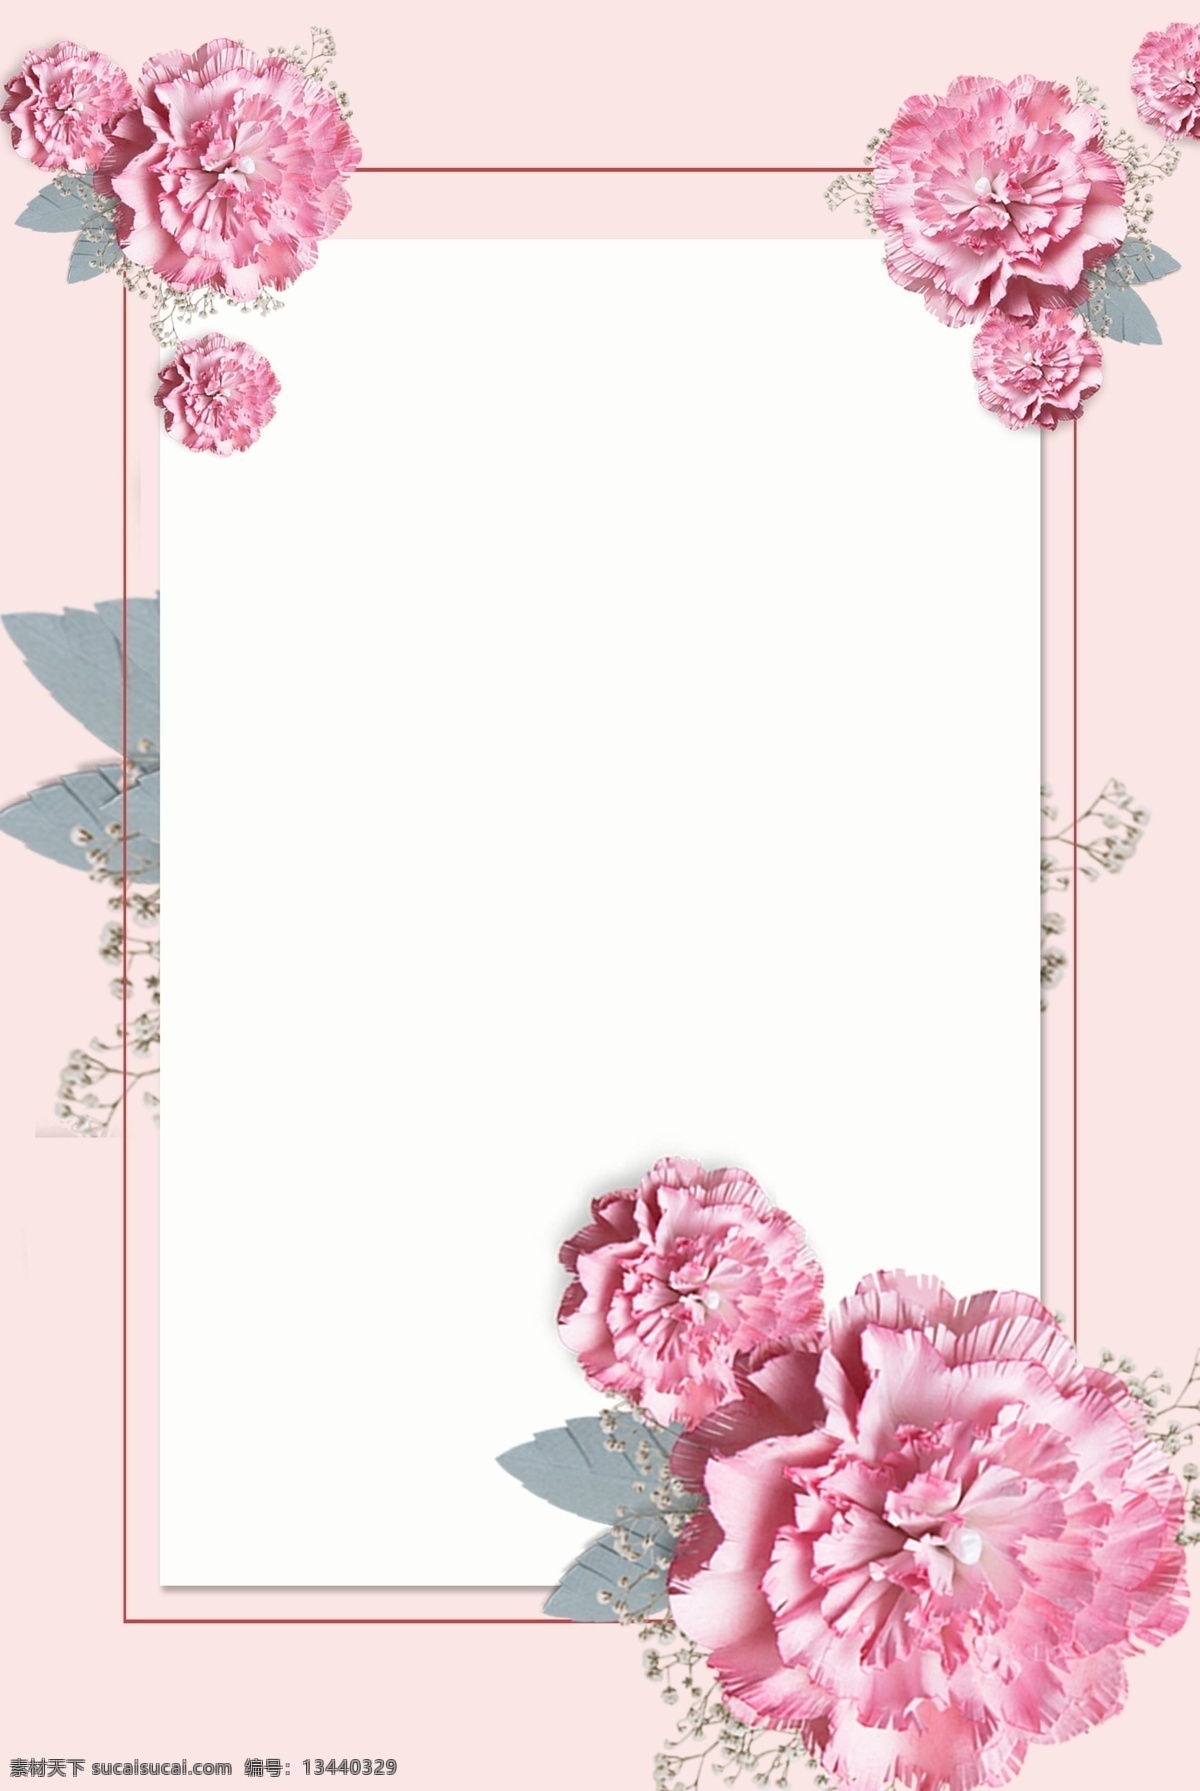 教师节 平面设计 背景 图 康乃馨 粉红色 卡通 手绘 扁平 花 展板 宣传